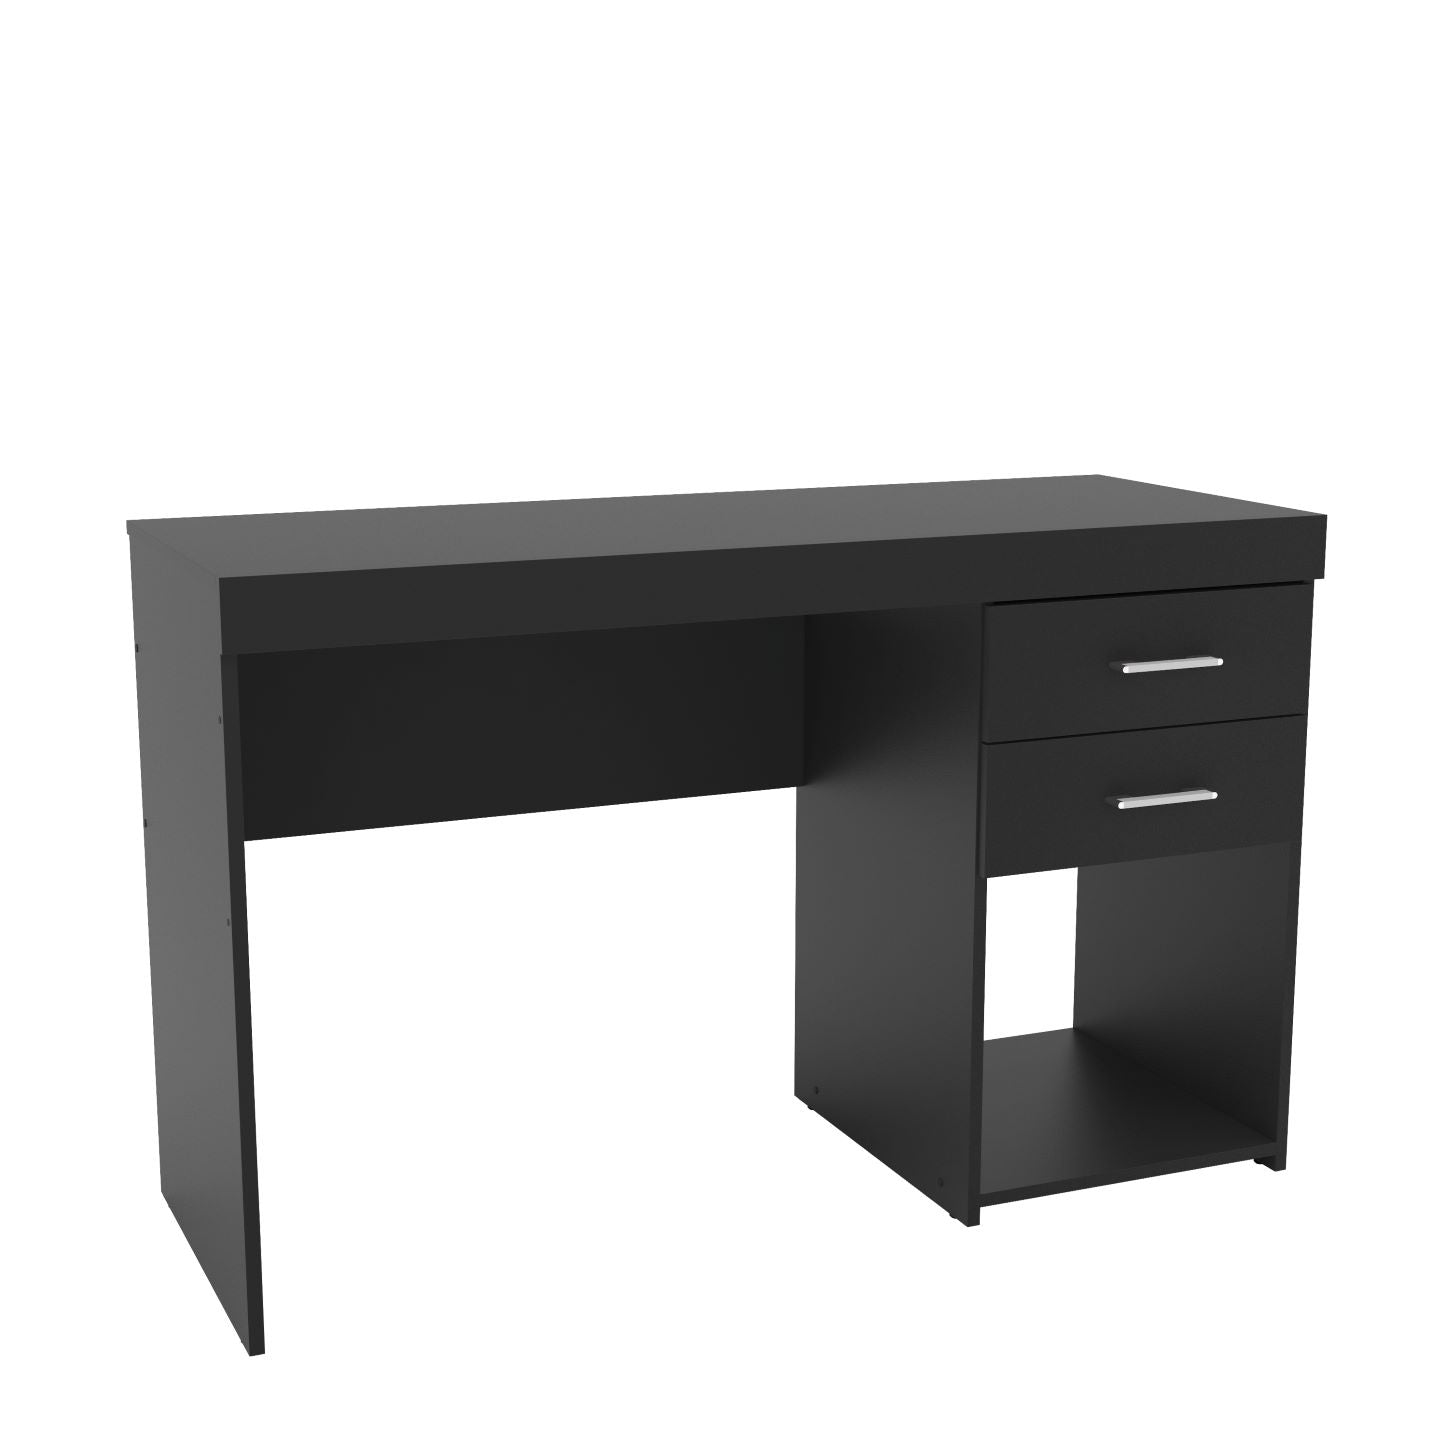 malta black office table 4